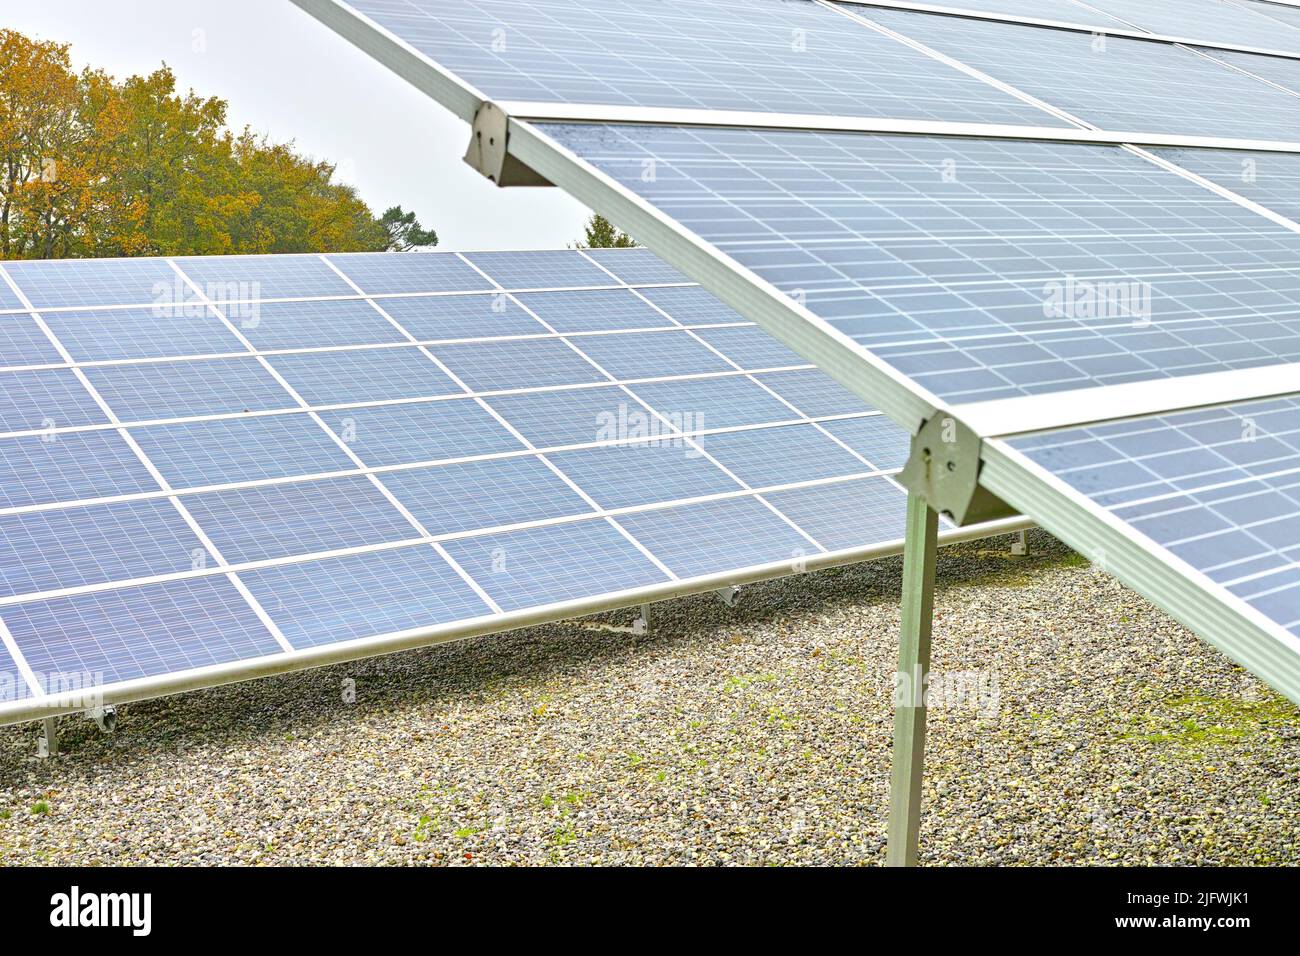 Installation d'énergie solaire au Danemark. Panneaux de cellules photovoltaïques comme source d'énergie renouvelable et alternative. Production d'électricité dans l'alimentation électrique Banque D'Images